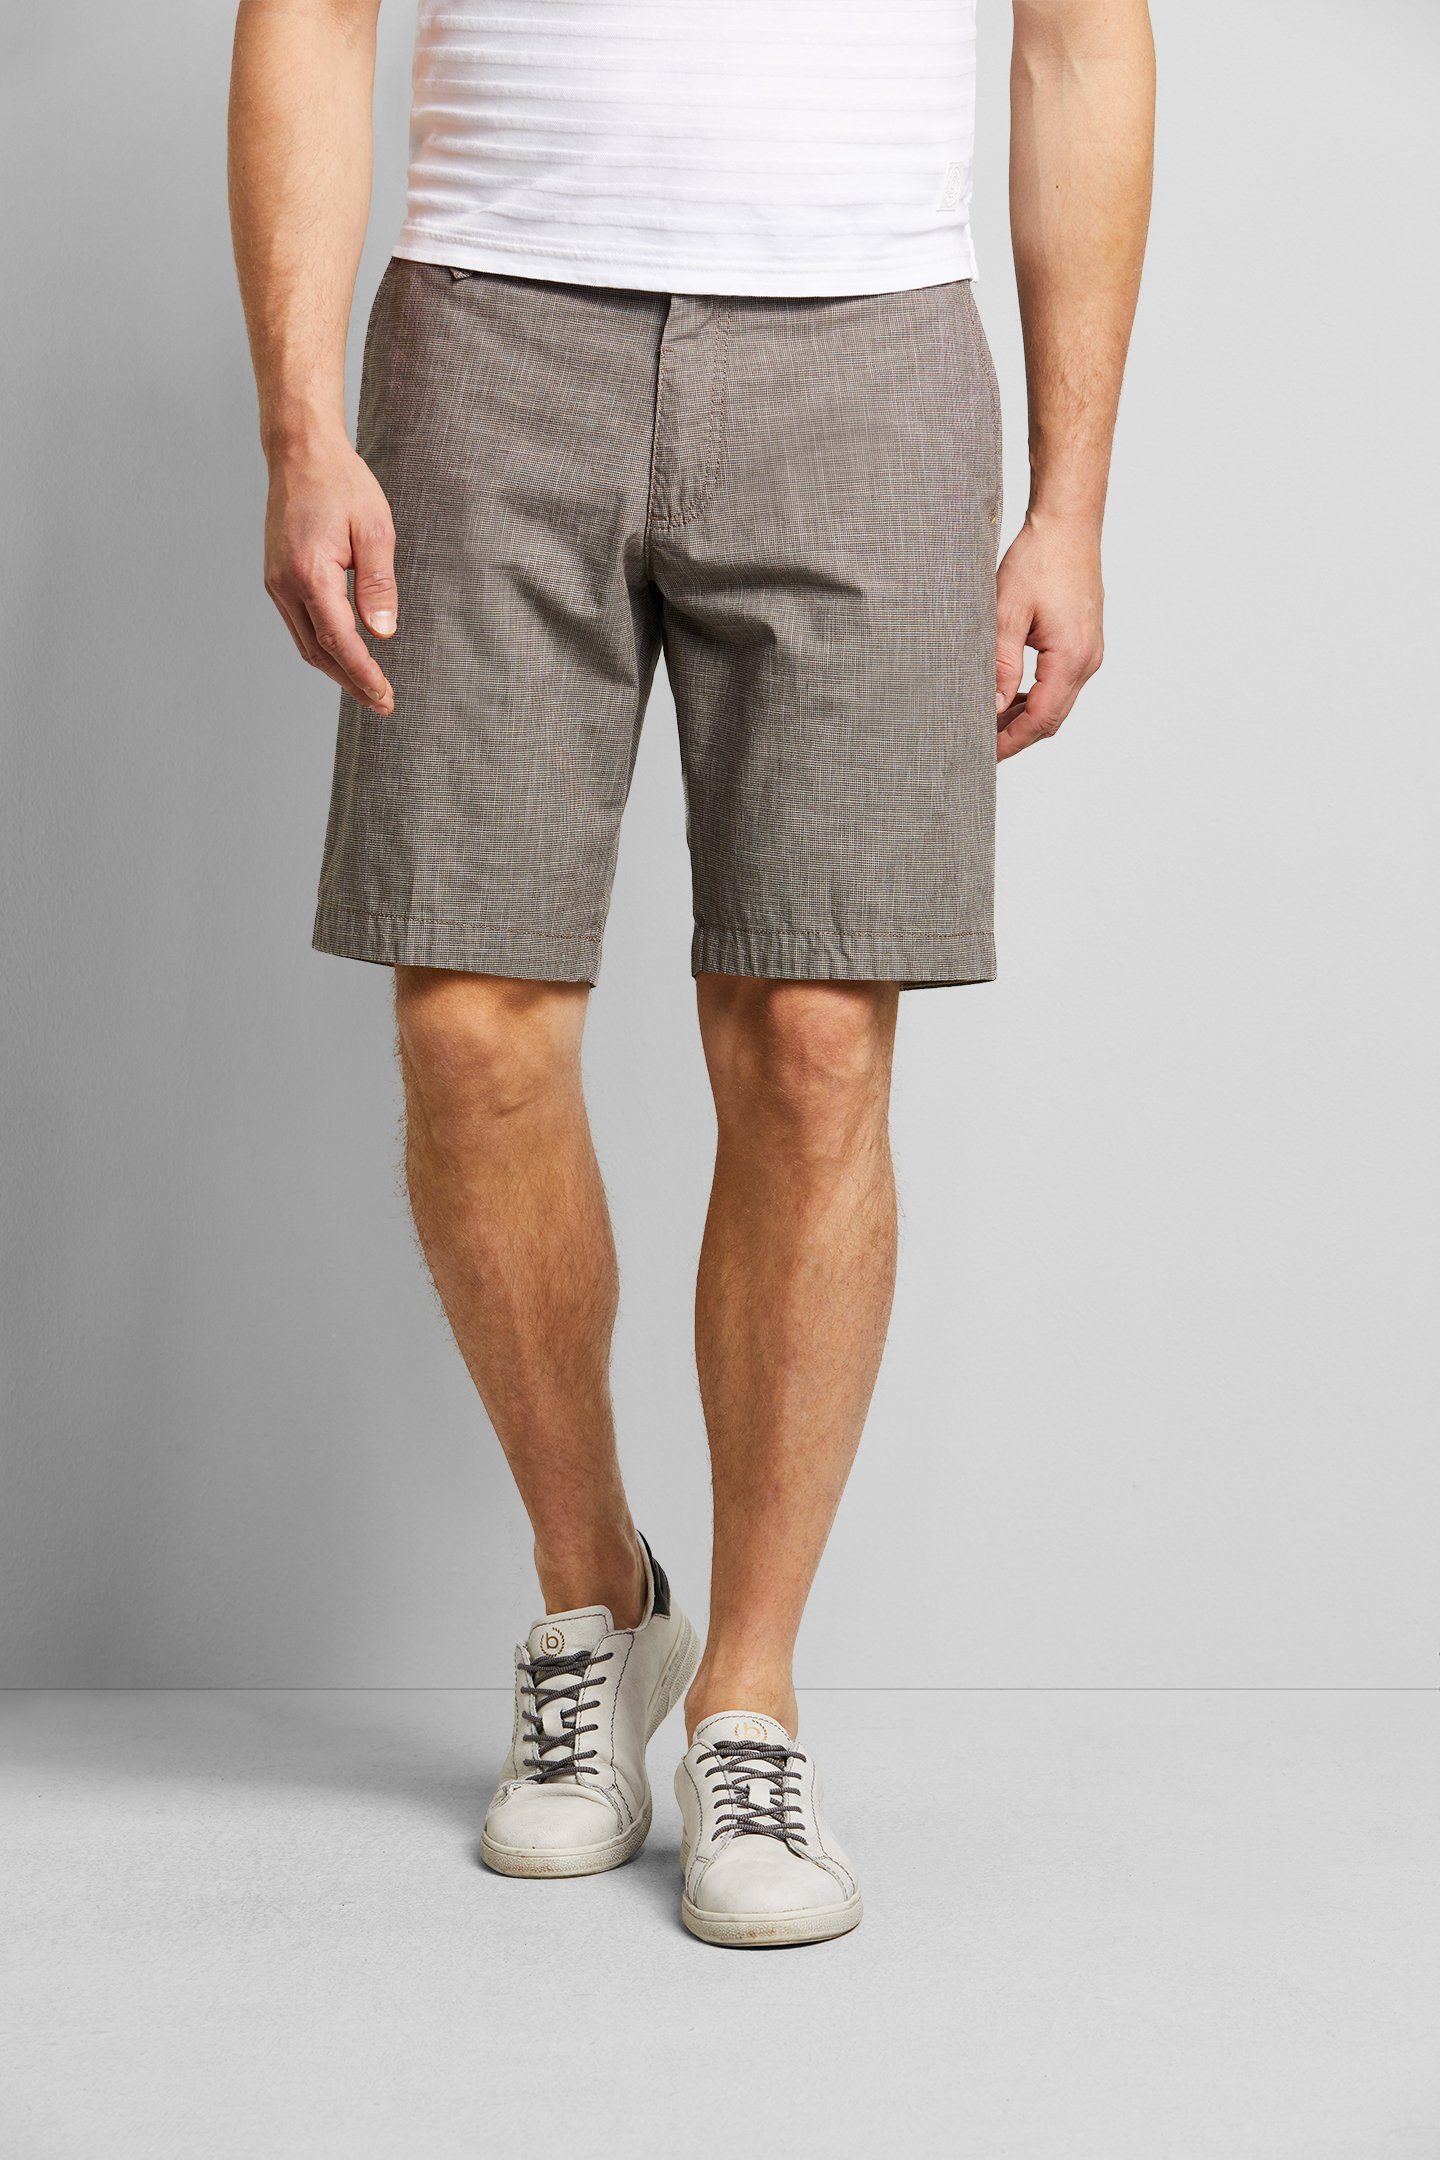 bugatti Shorts in einem Leinen-Look taupe